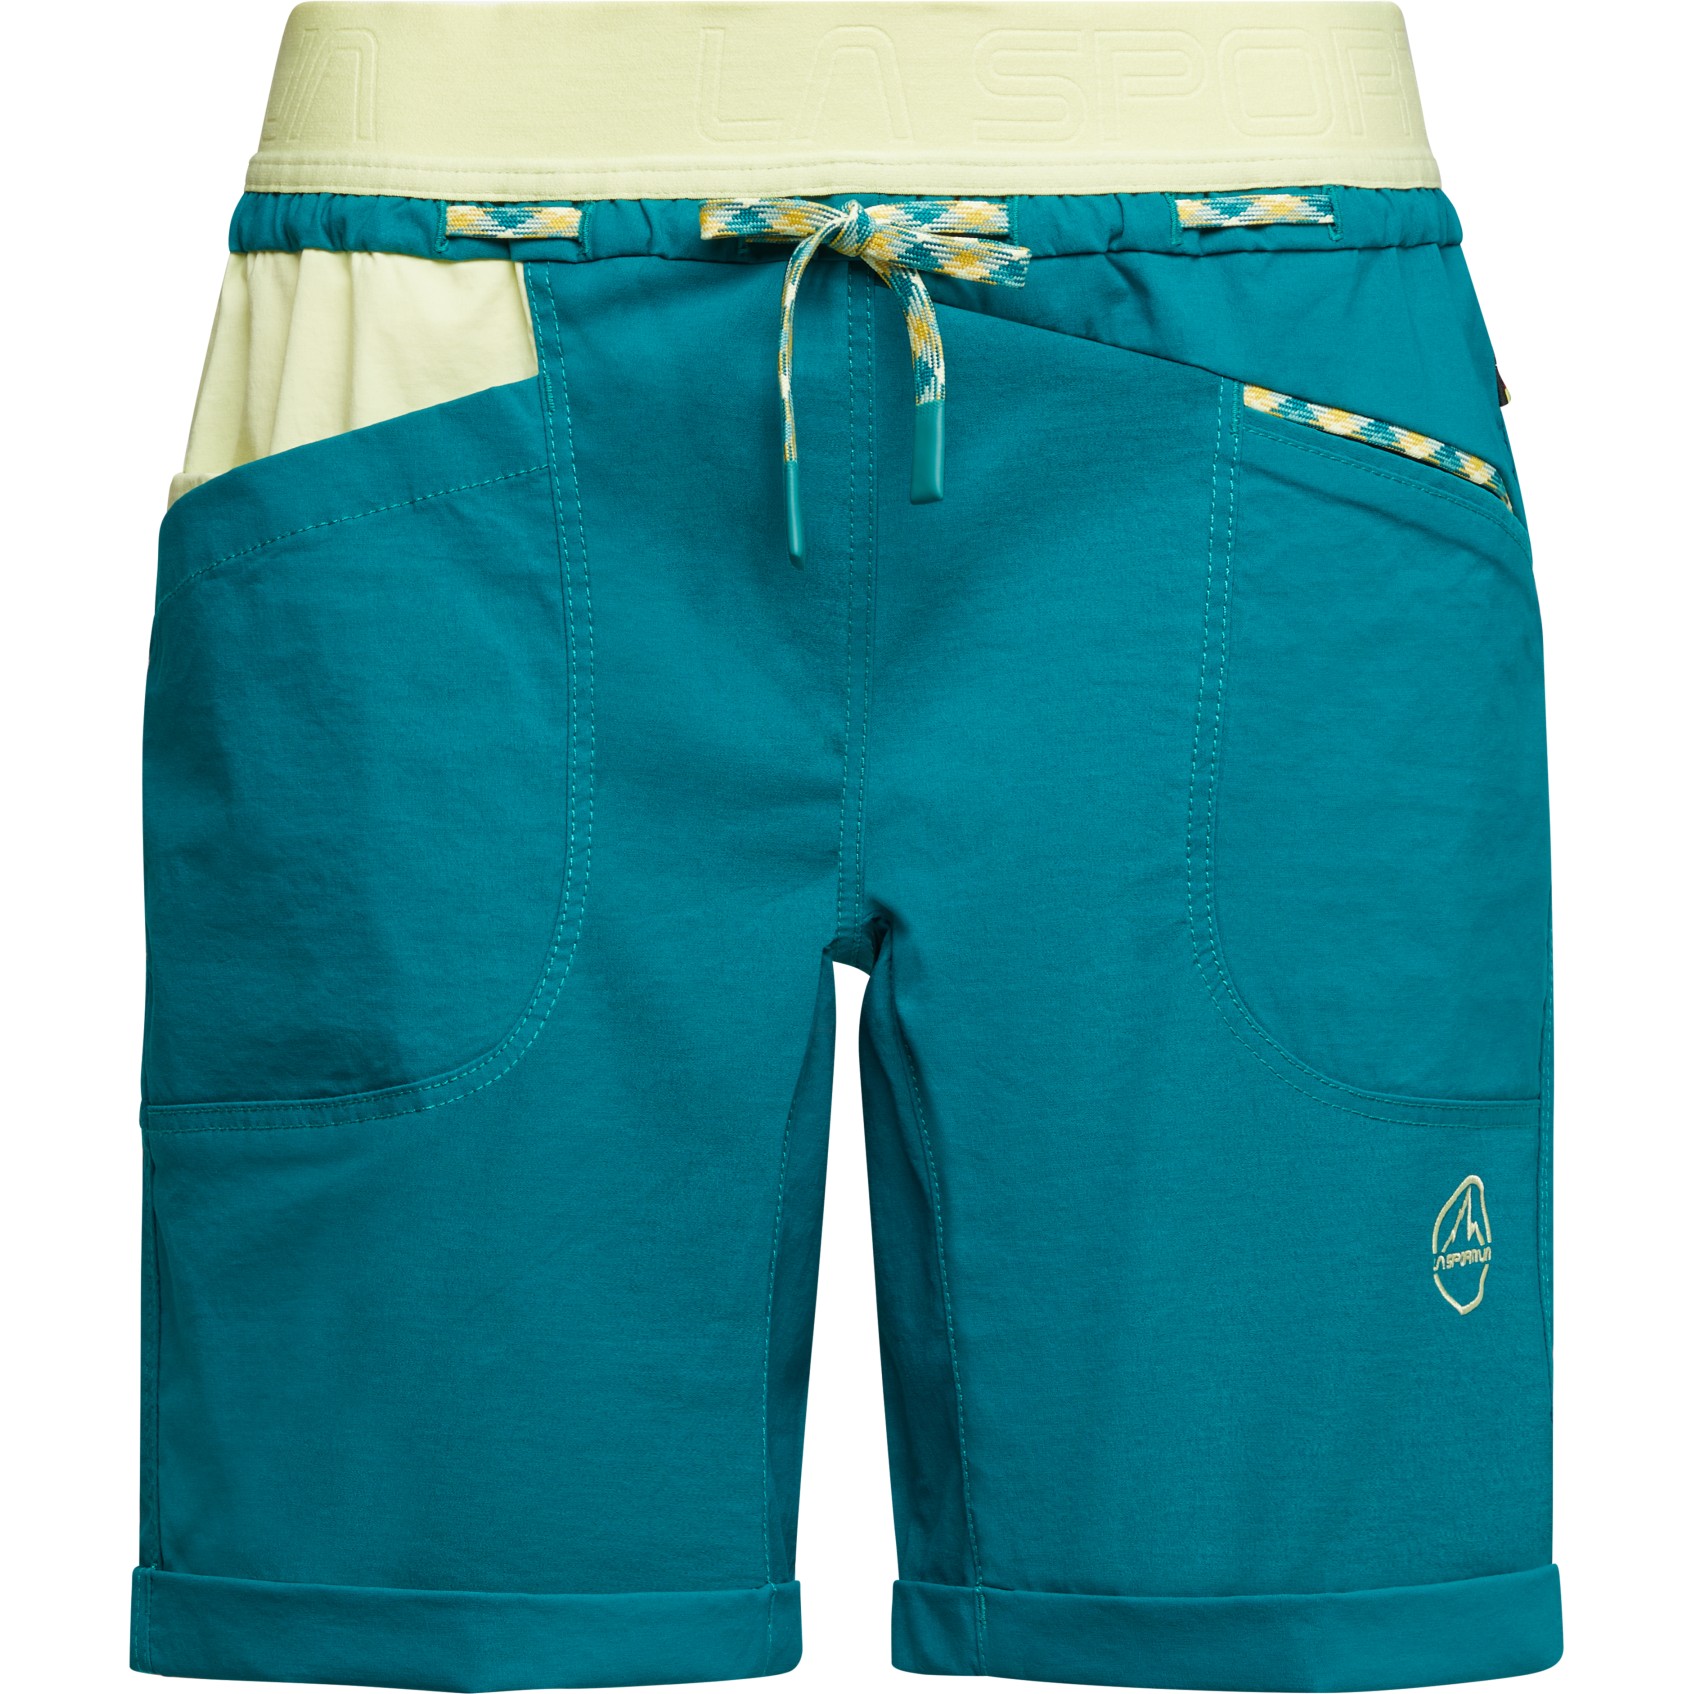 Produktbild von La Sportiva Mantra Shorts Damen - Everglade/Zest